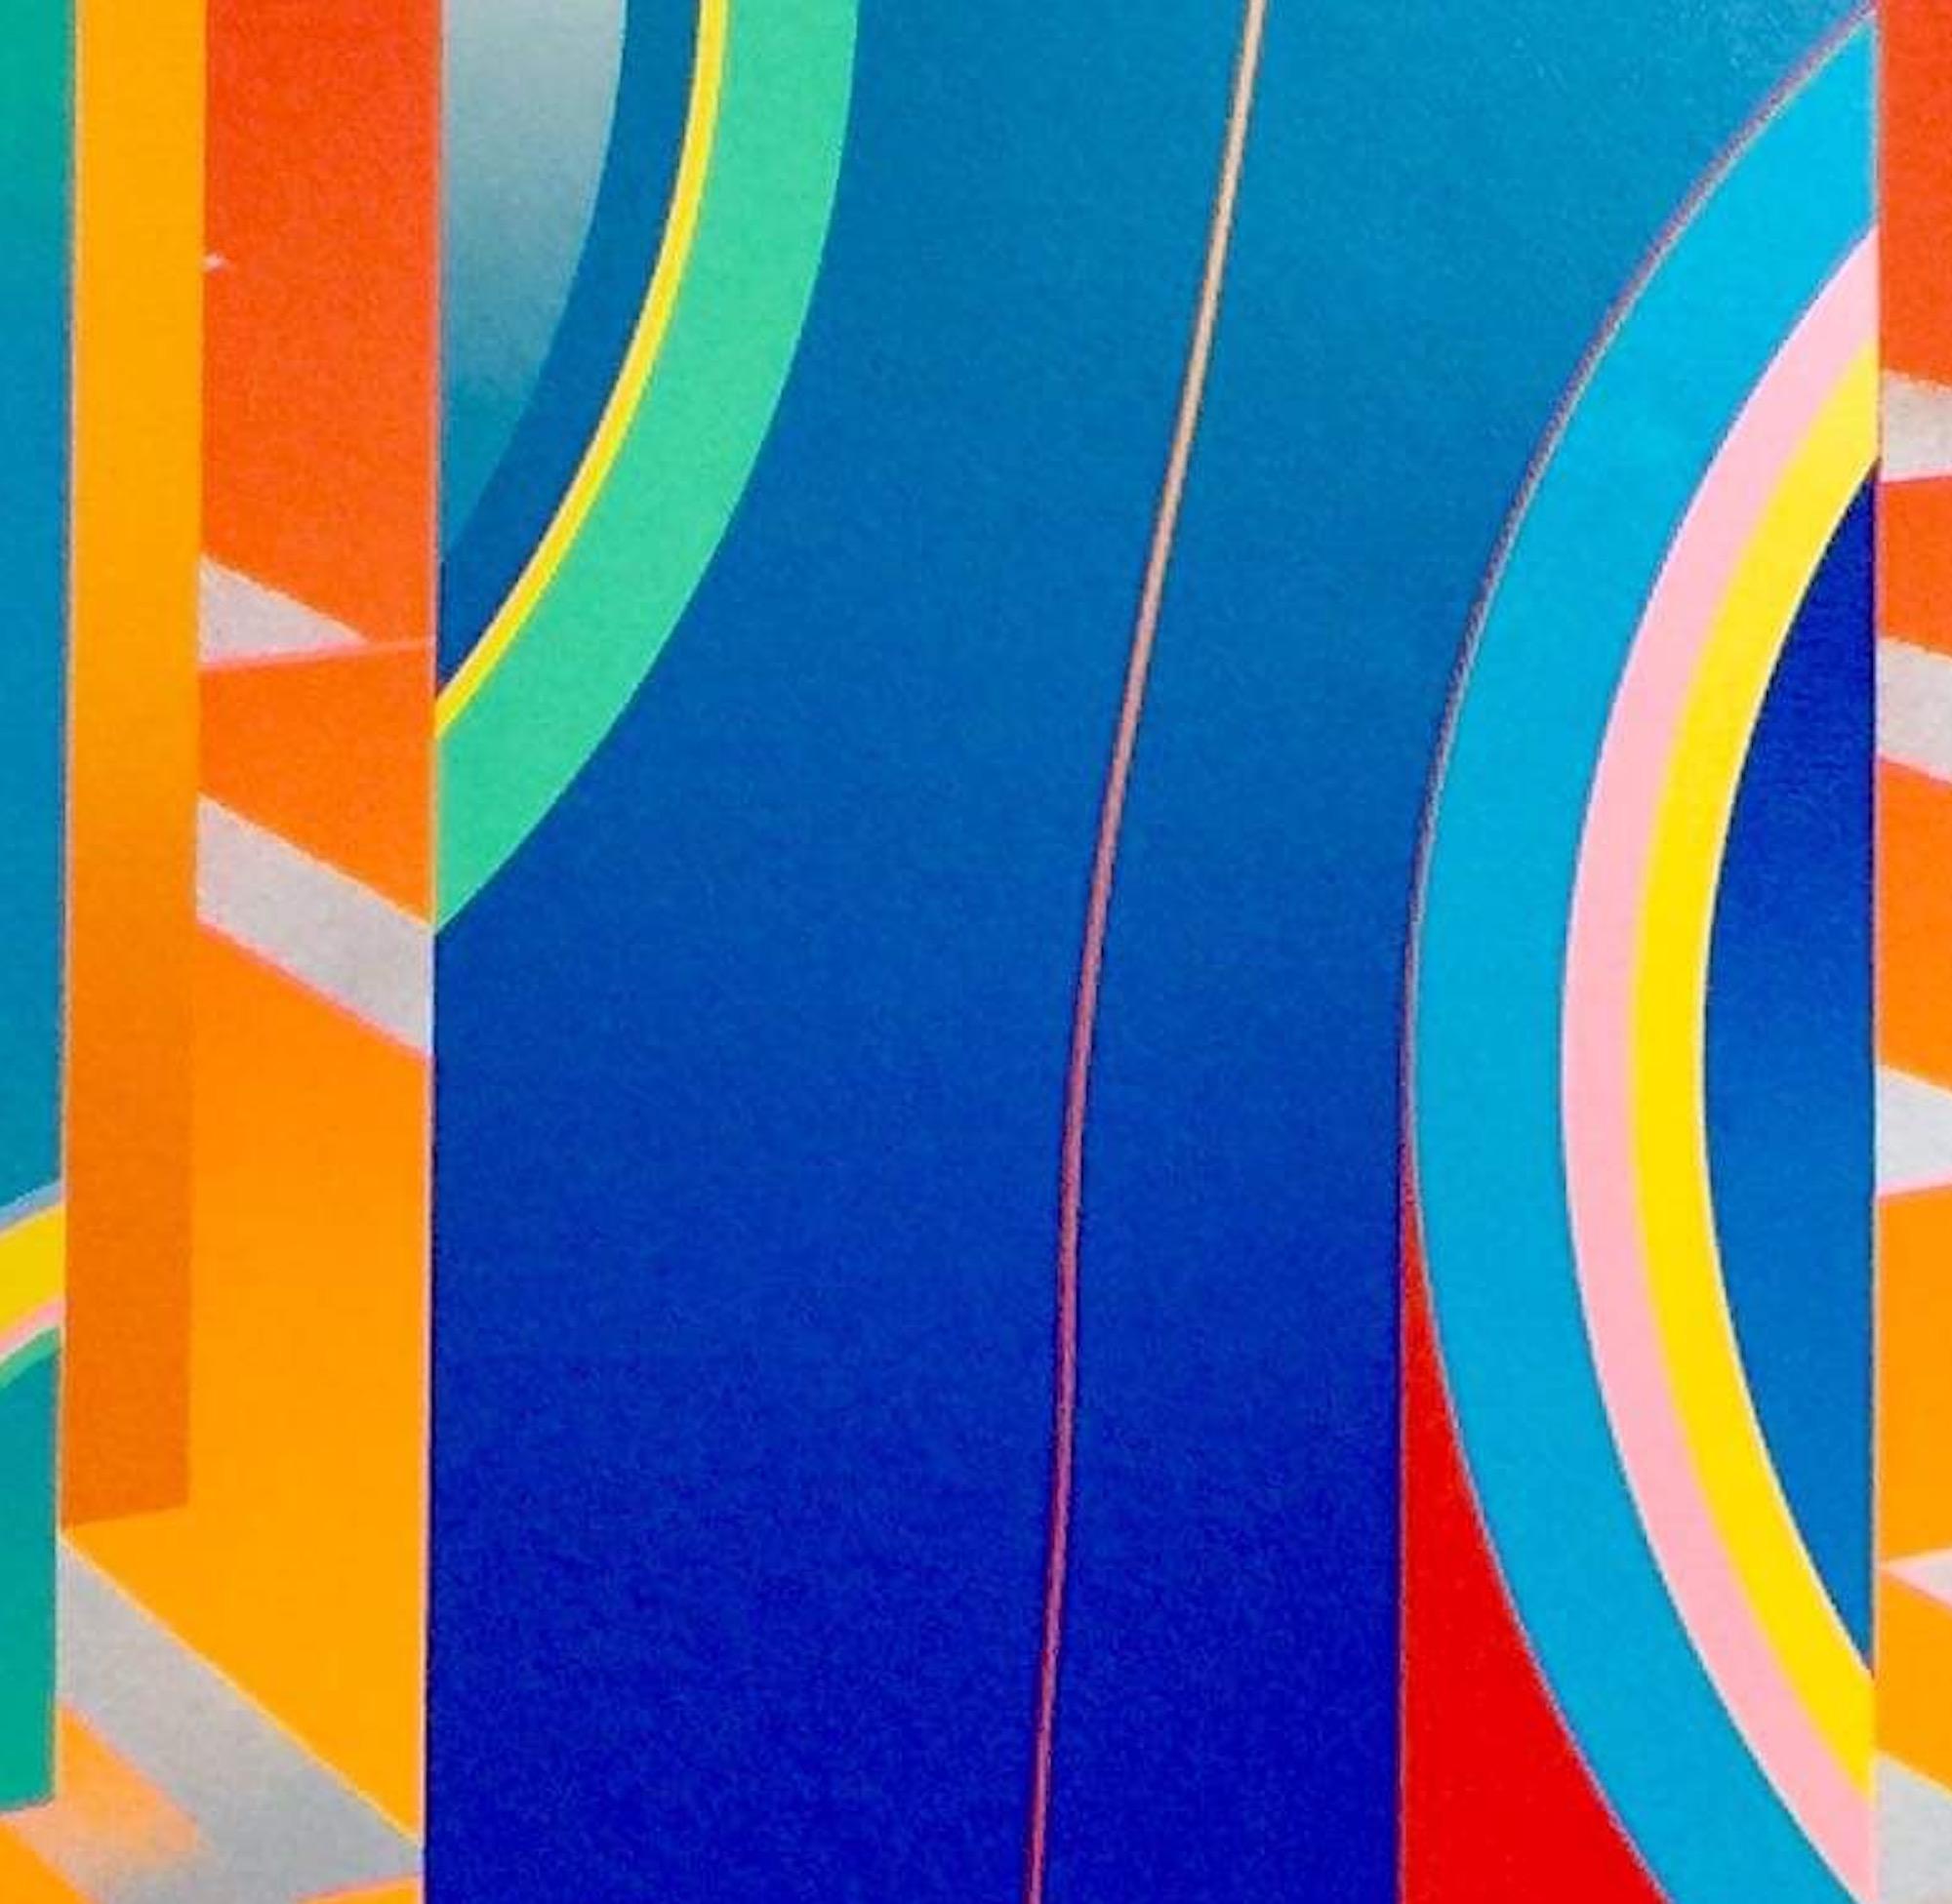 Collectors Édition limitée des années 1980 - Édition graphique géométrique abstraite et colorée 1 - Abstrait Print par Anthony Benjamin